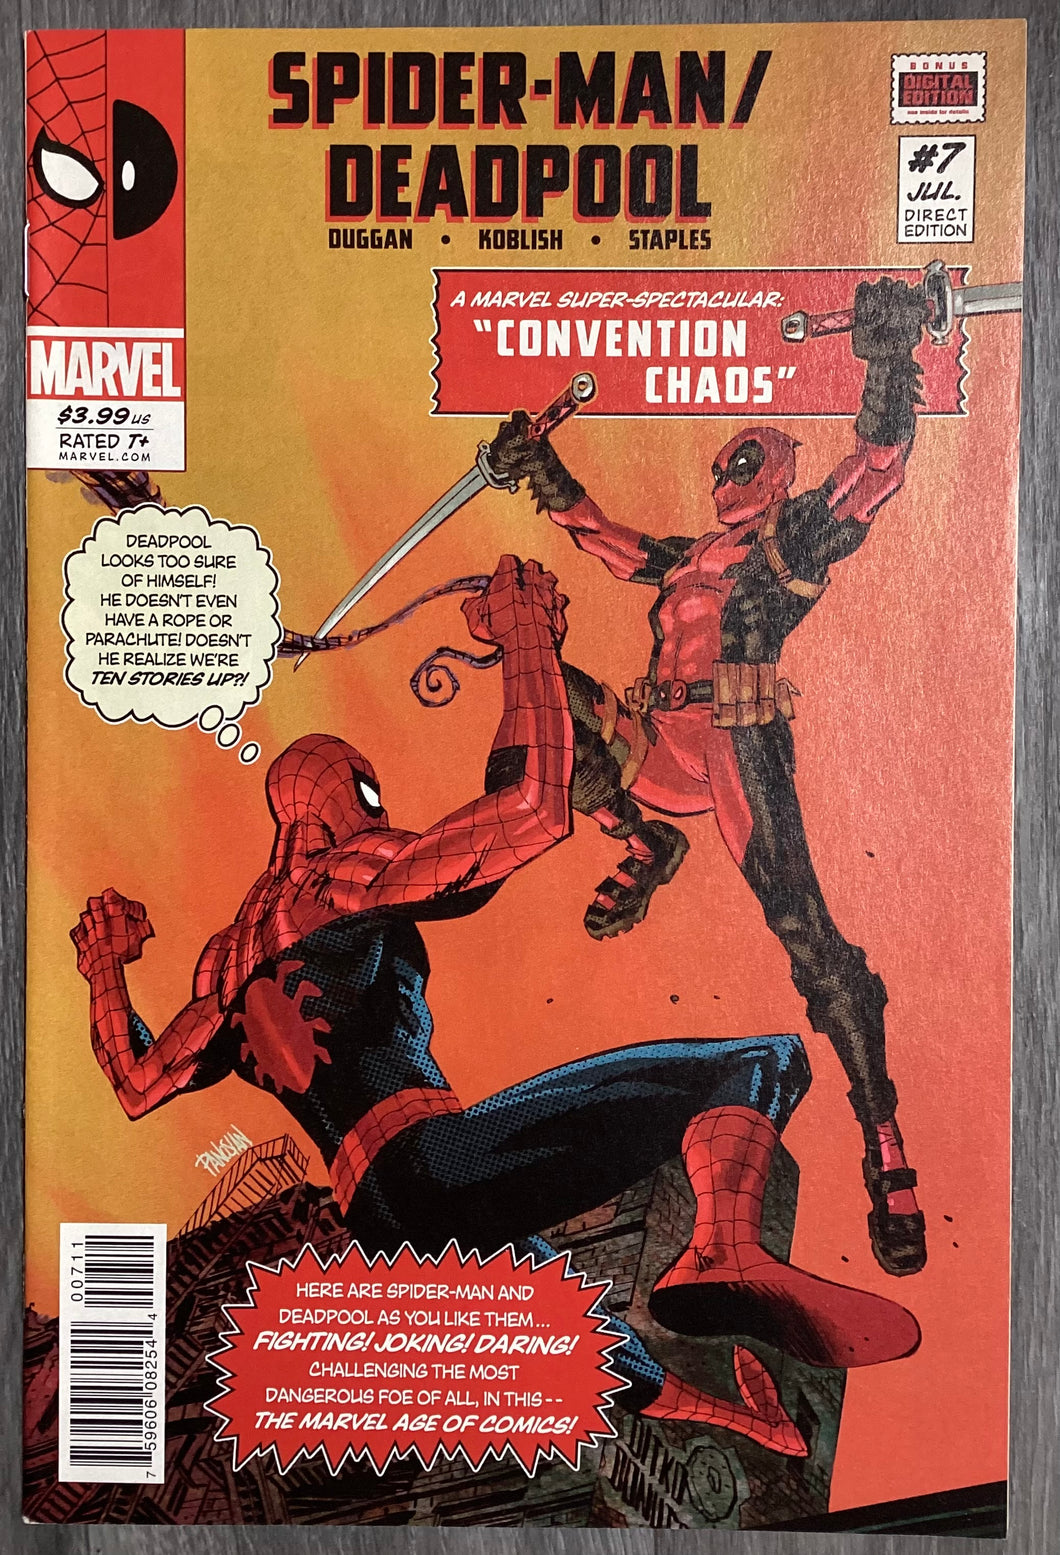 Spider-Man/Deadpool No. #7 2016 Marvel Comics